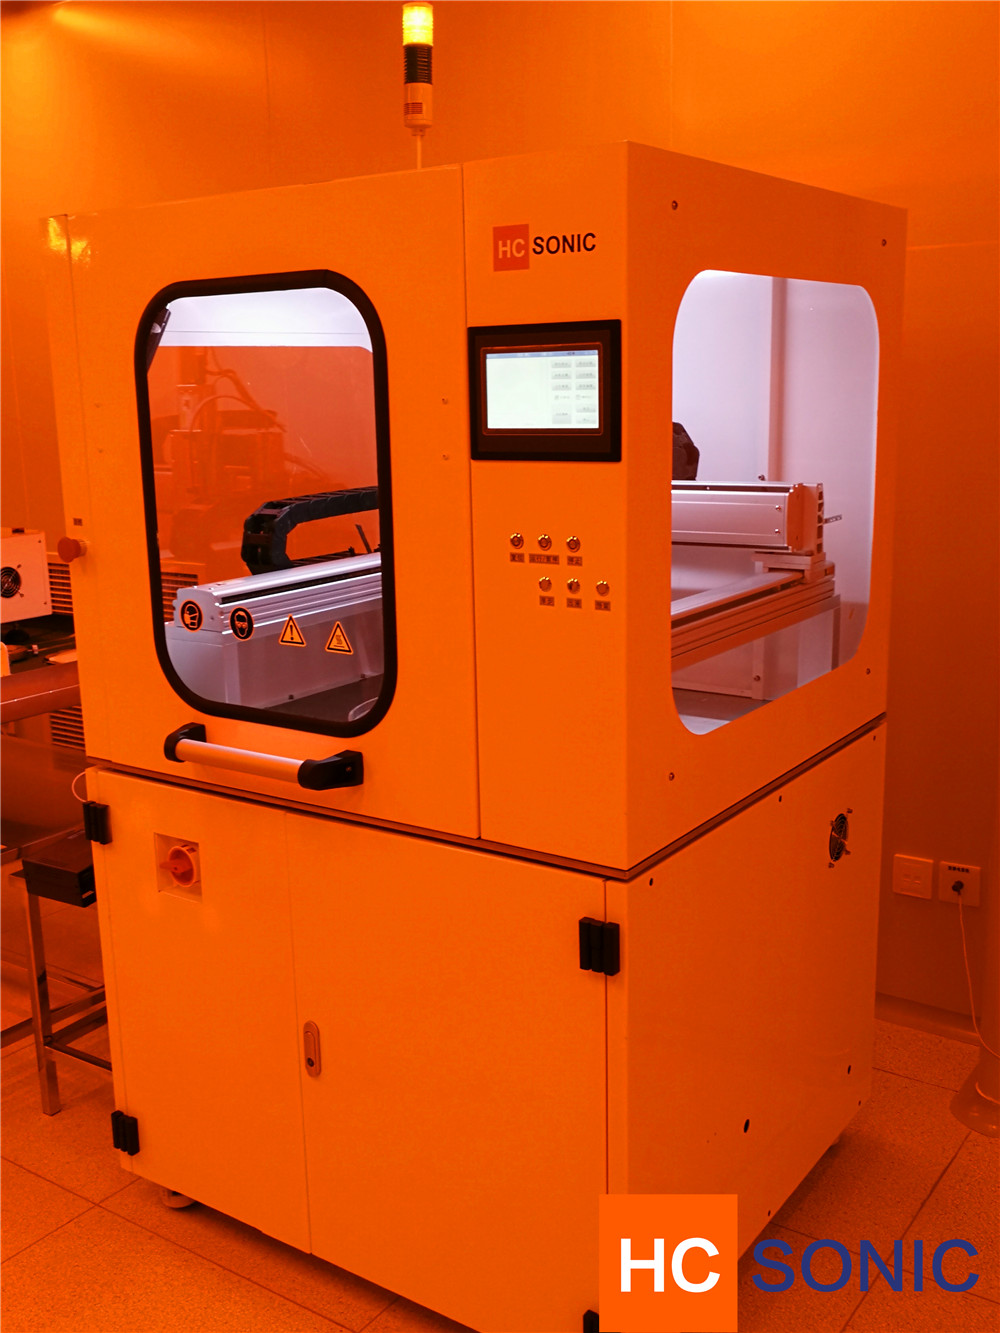 Market development of ultrasonic machining equipment